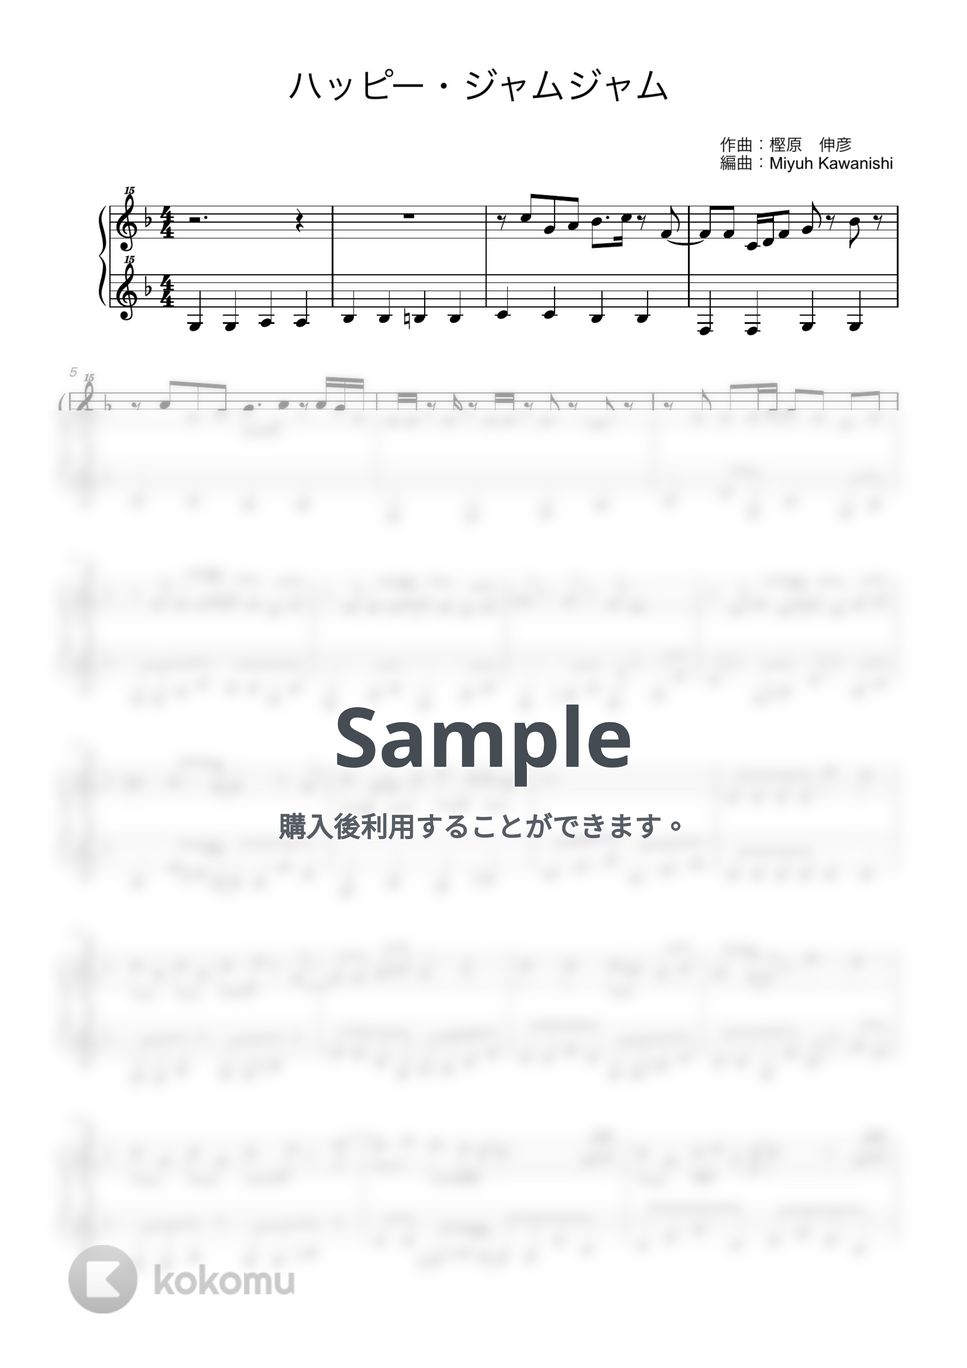 ハッピー・ジャムジャム (トイピアノ / 25鍵盤 / 童謡) by 川西 三裕